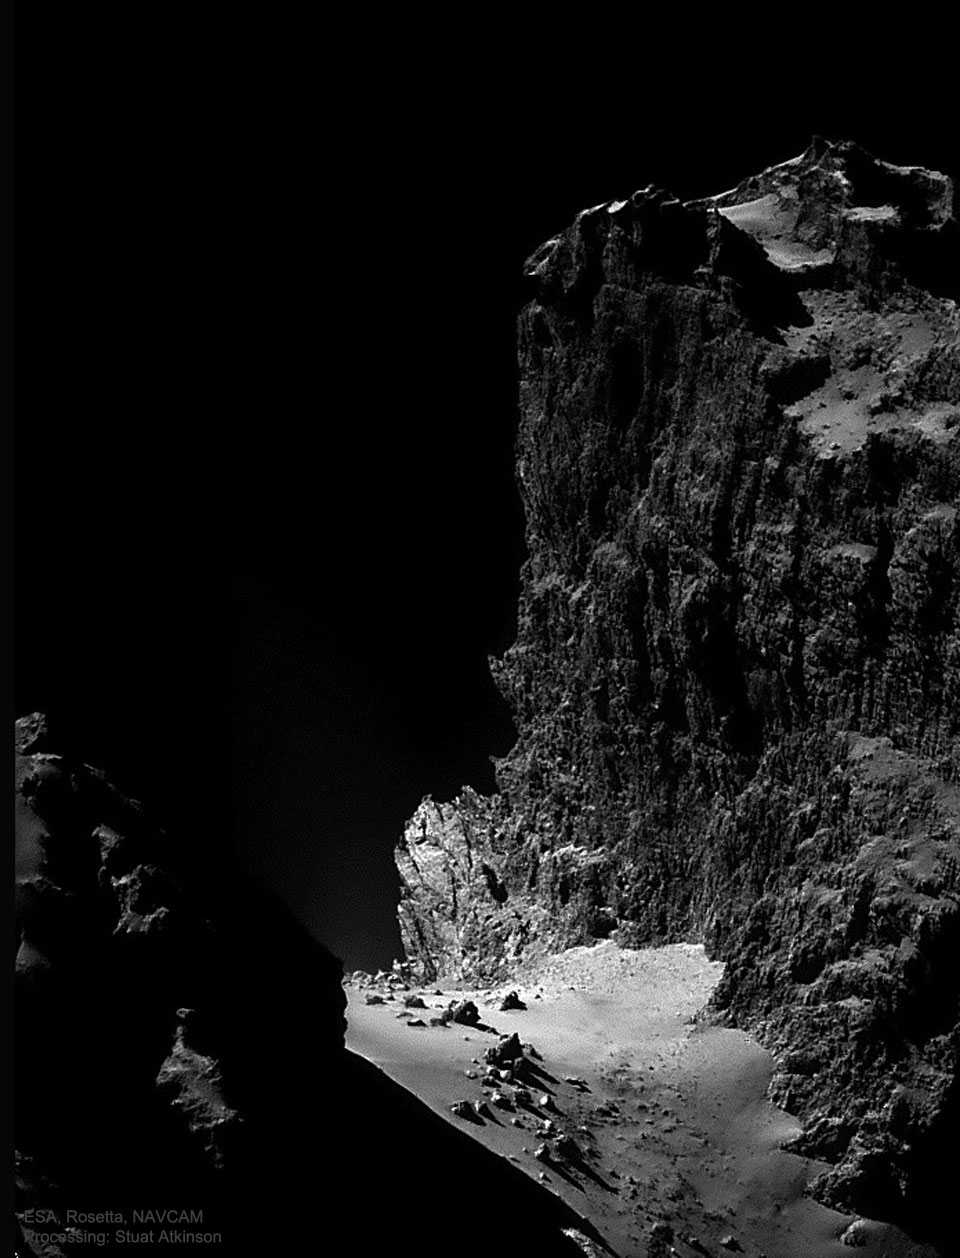 特色图片显示了2014年由欧空局的罗塞塔航天器拍摄的丘泽彗星上出现的一公里高的悬崖。
有关更多详细信息，请参阅说明。